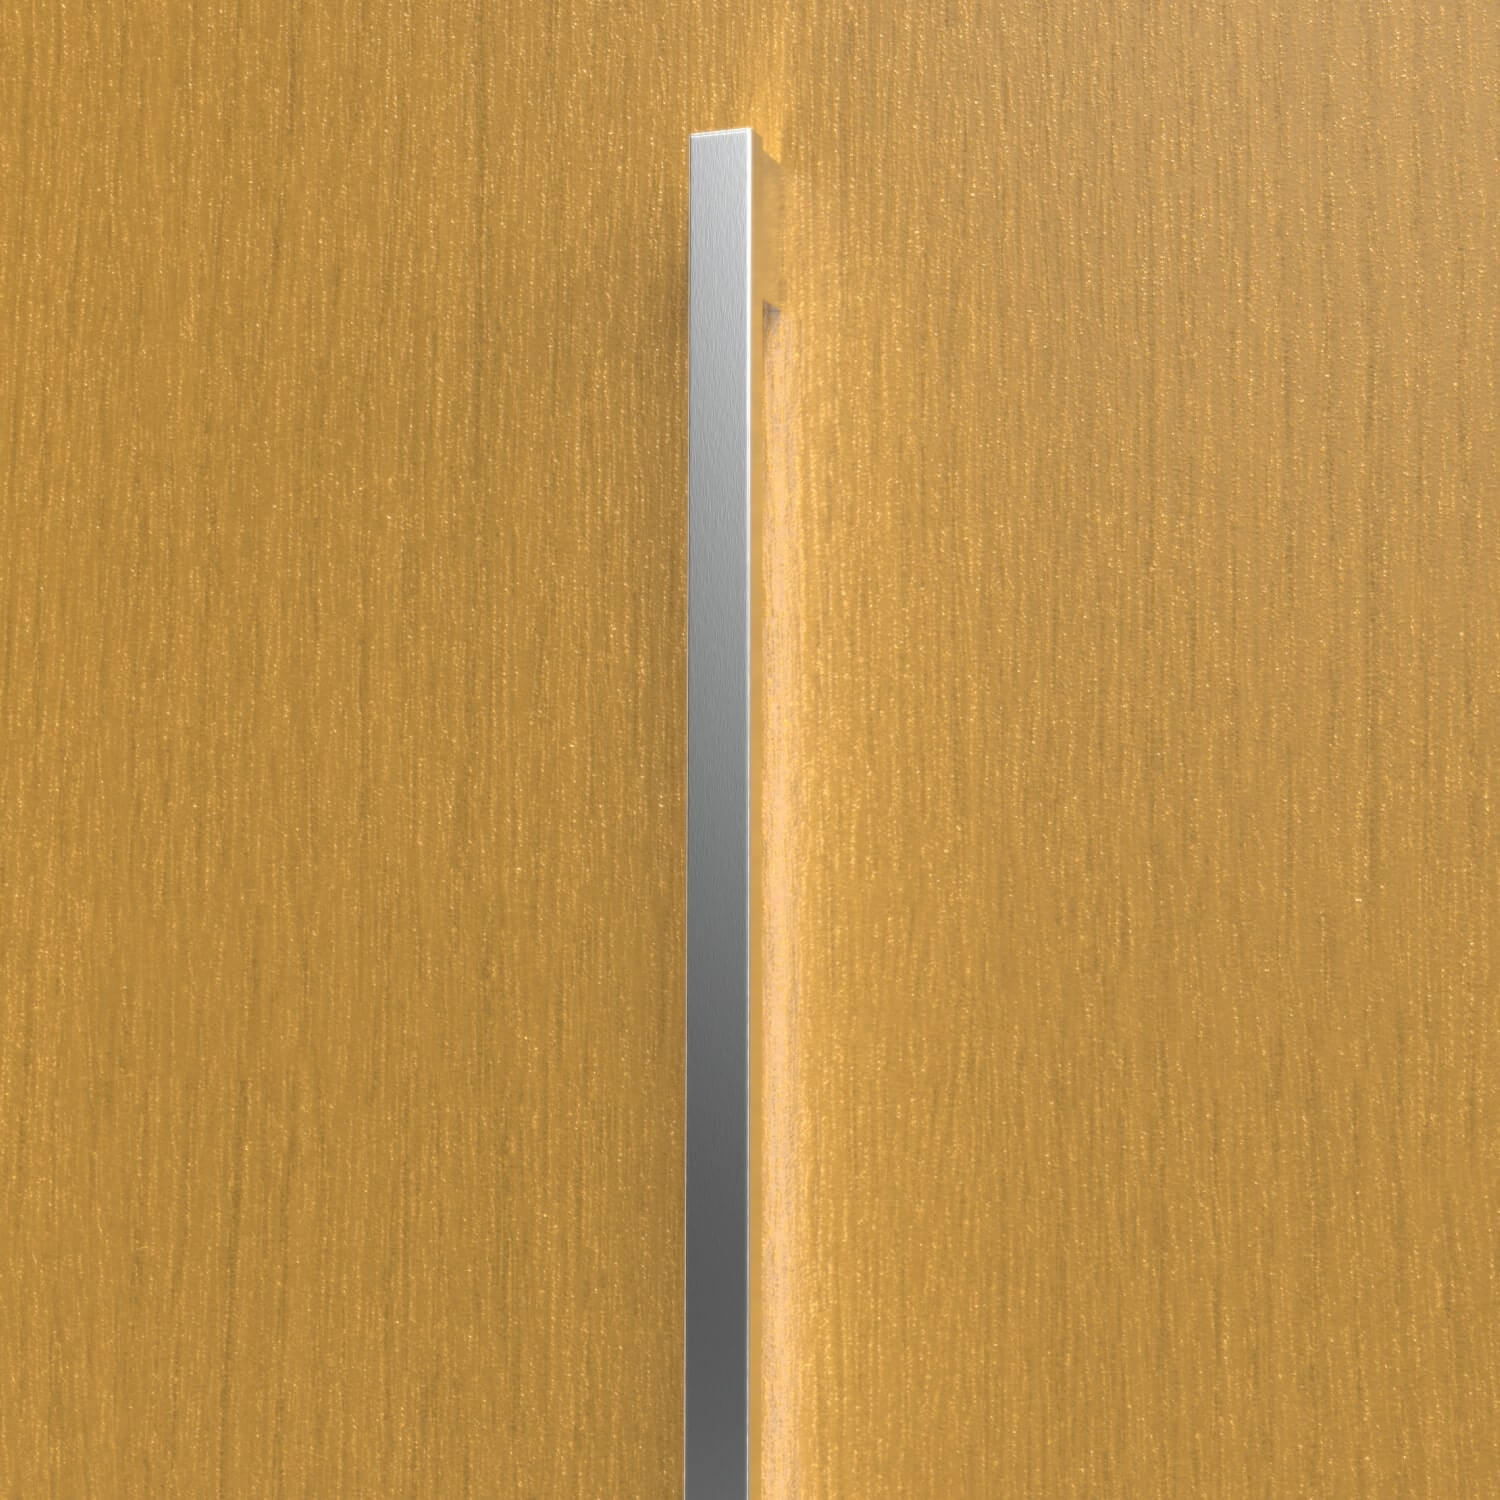 Wooden front door handle with lighting